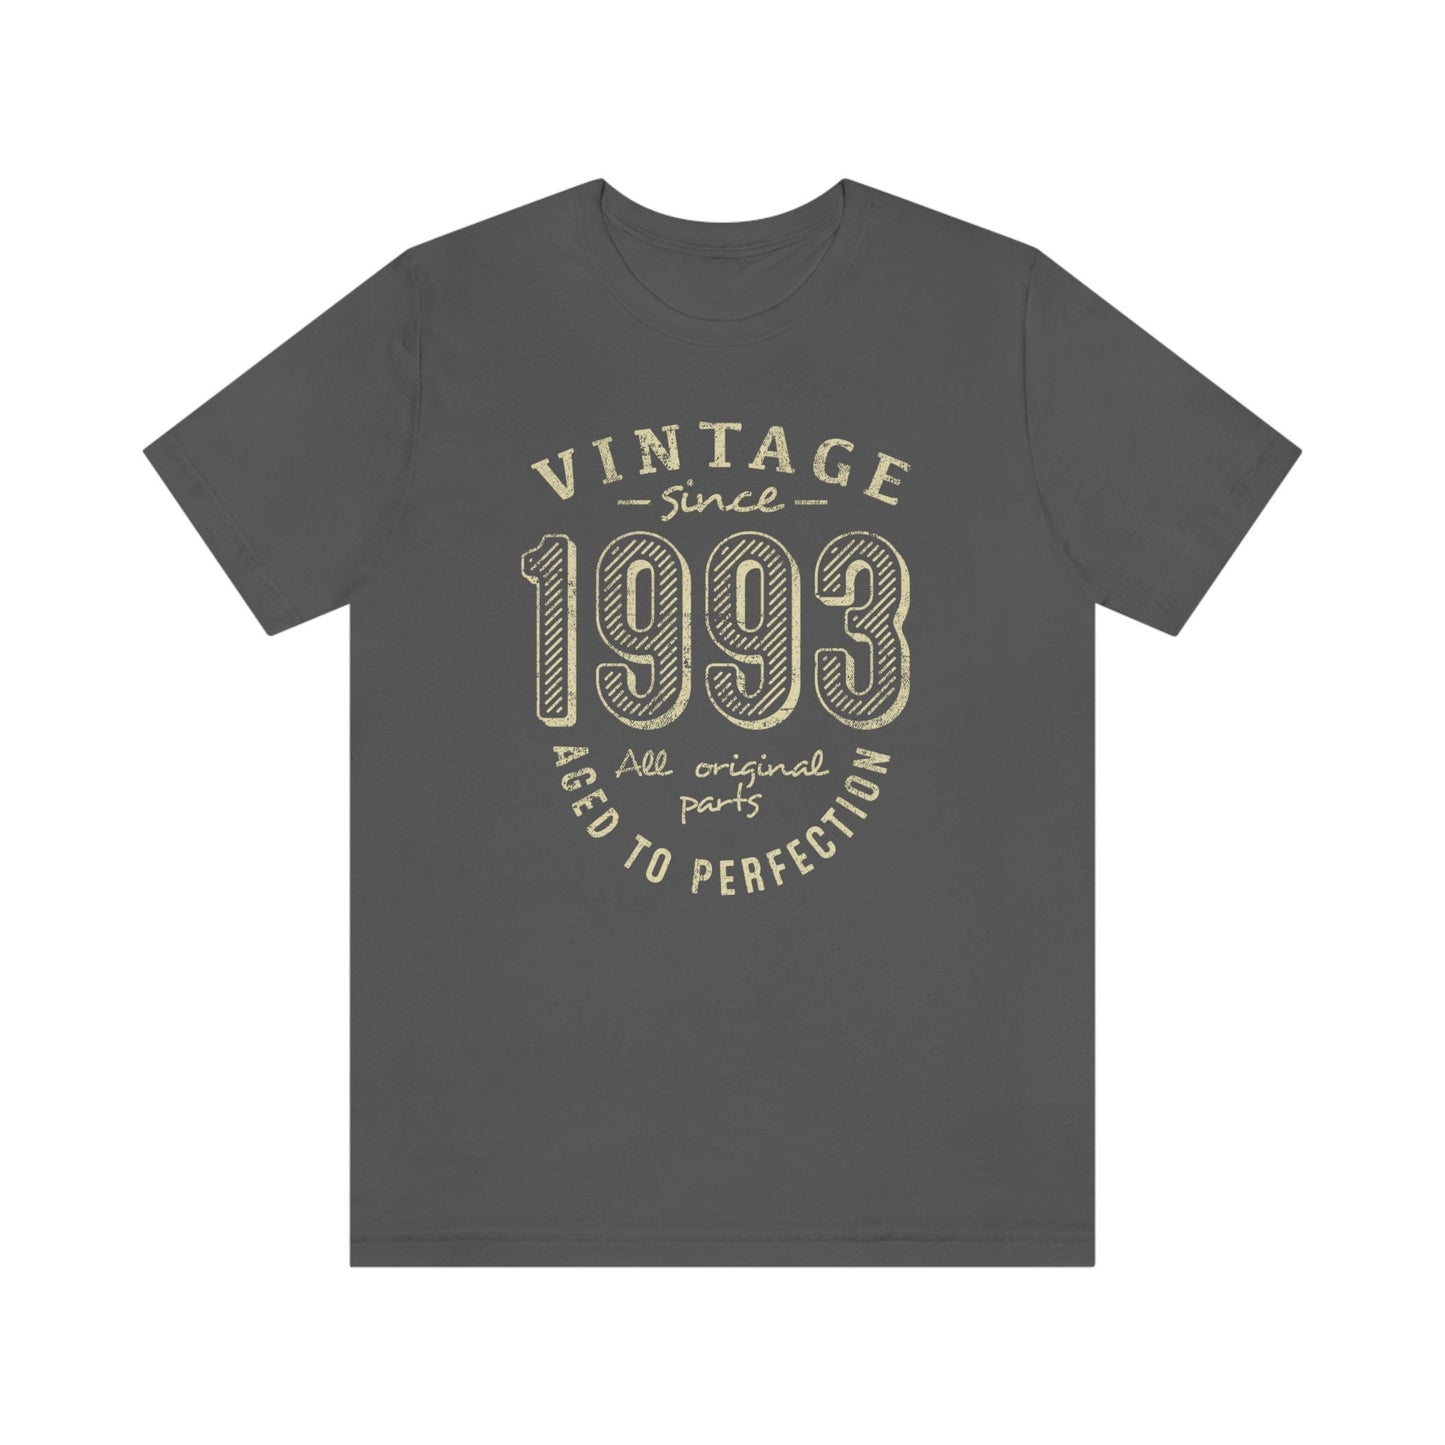 Vintage birthday gift t-shirt for women or men, Vintage since 1993 birthday shirt for brother